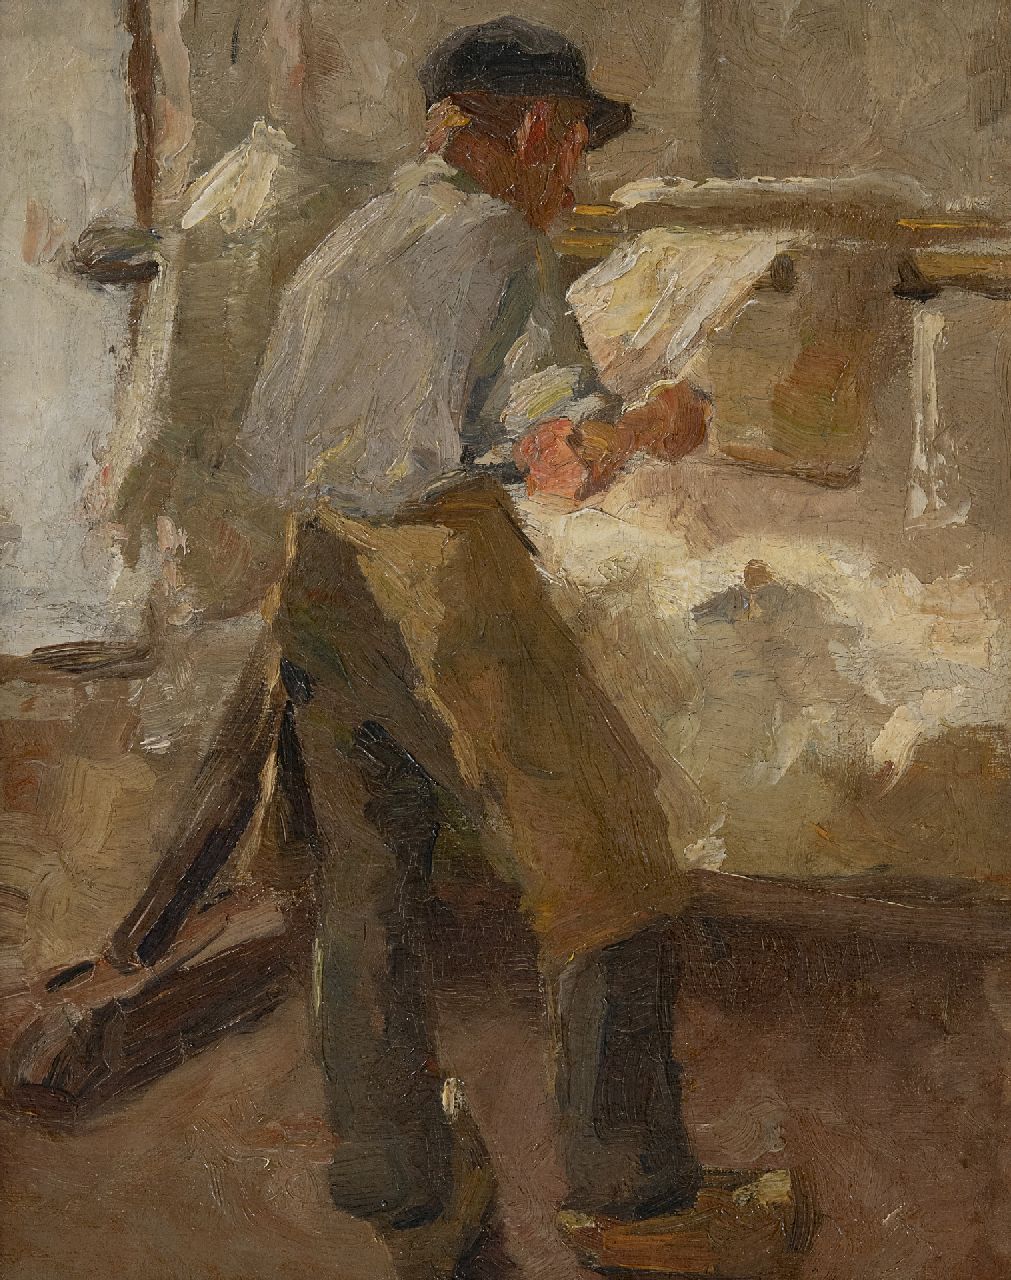 Rappard A.G.A. van | 'Anthon' Gerhard Alexander van Rappard | Schilderijen te koop aangeboden | Jonge arbeider aan een spanbok, olieverf op doek 33,1 x 26,3 cm, te dateren ca. 1890-1891